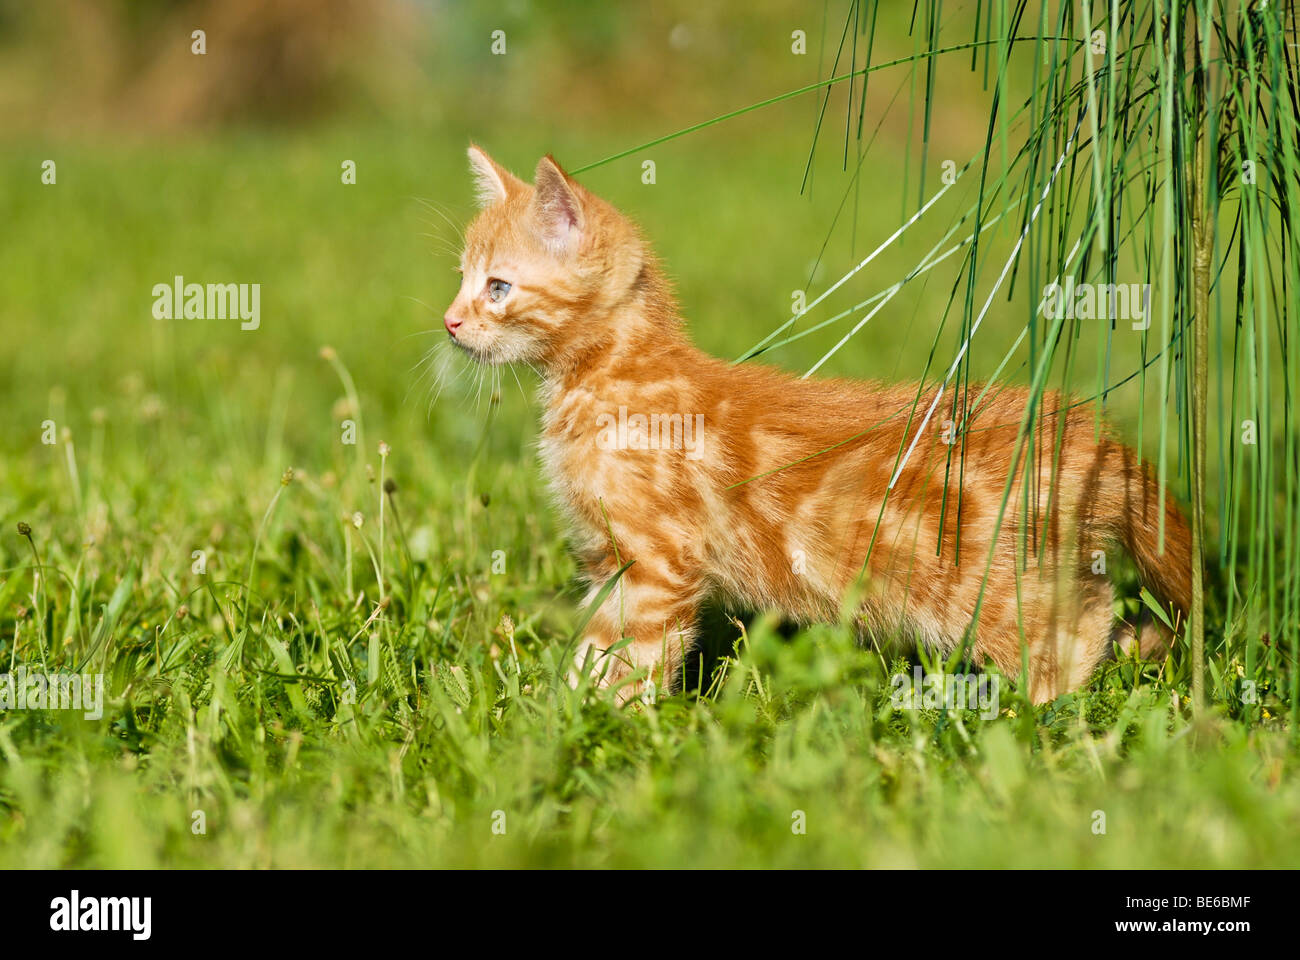 Gato doméstico, gatito jugando con césped ornamental Foto de stock